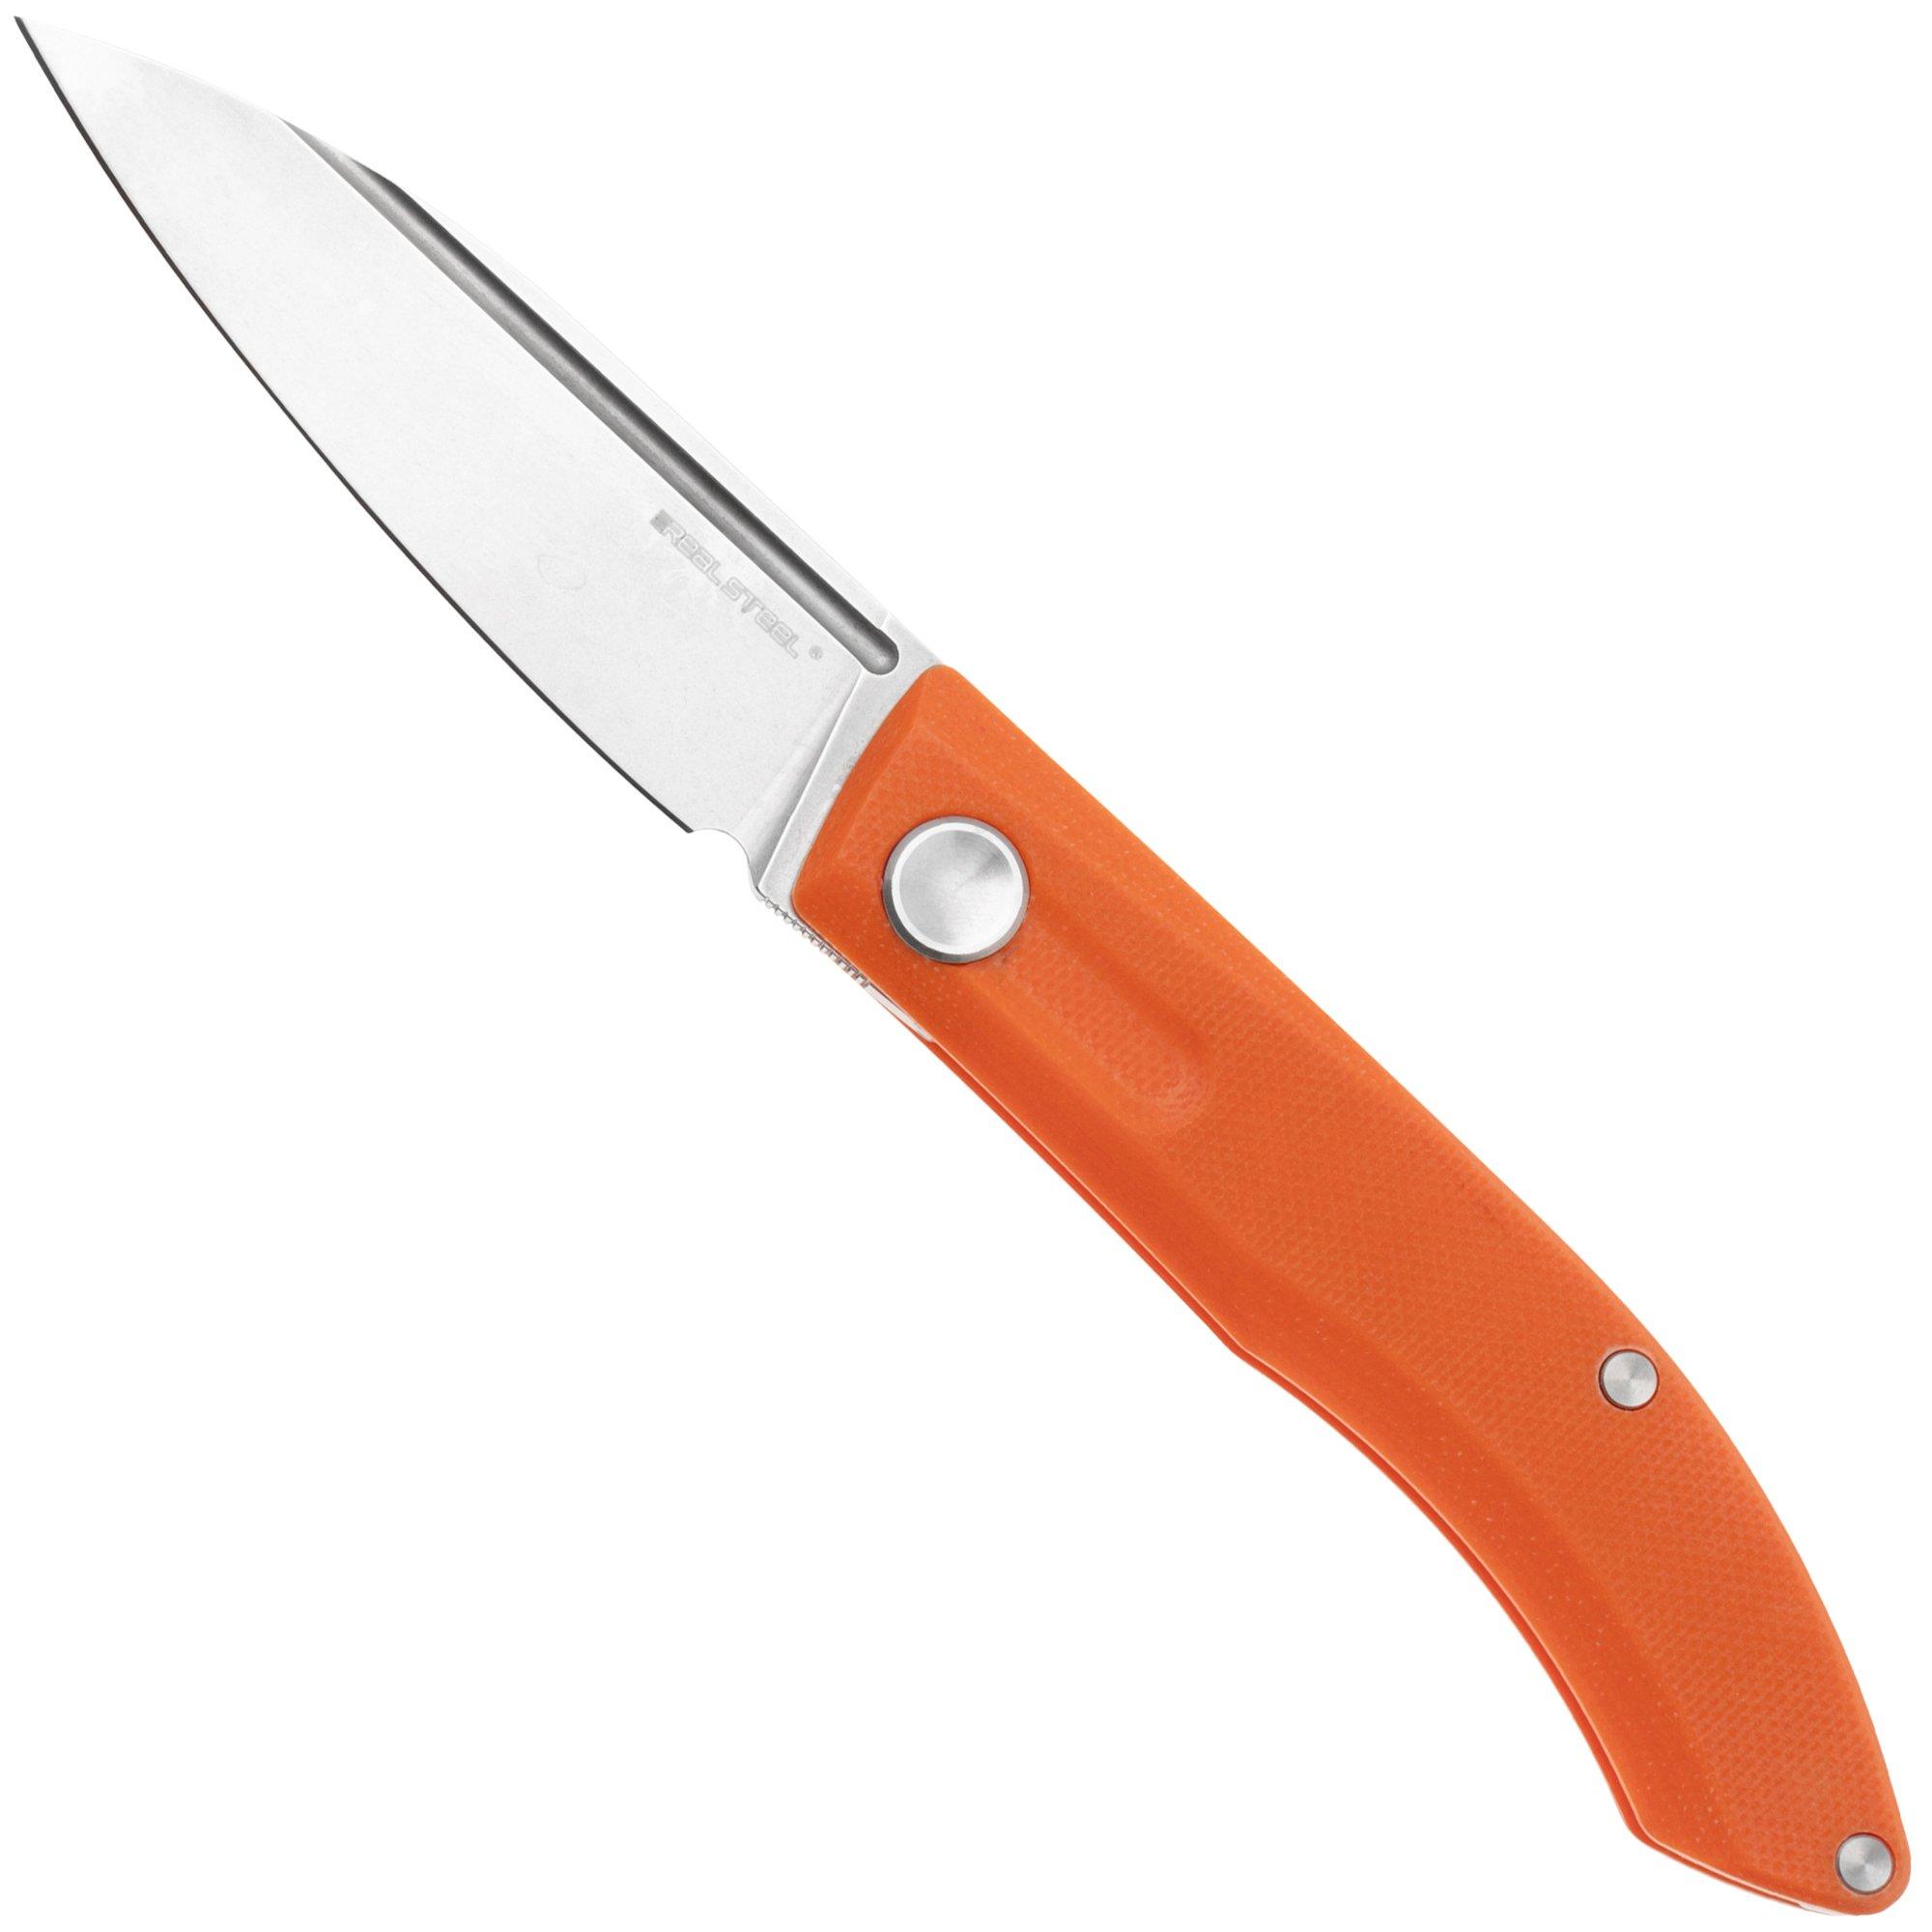 Real Steel Stella Orange 7052 pocket knife, Poltergeist design